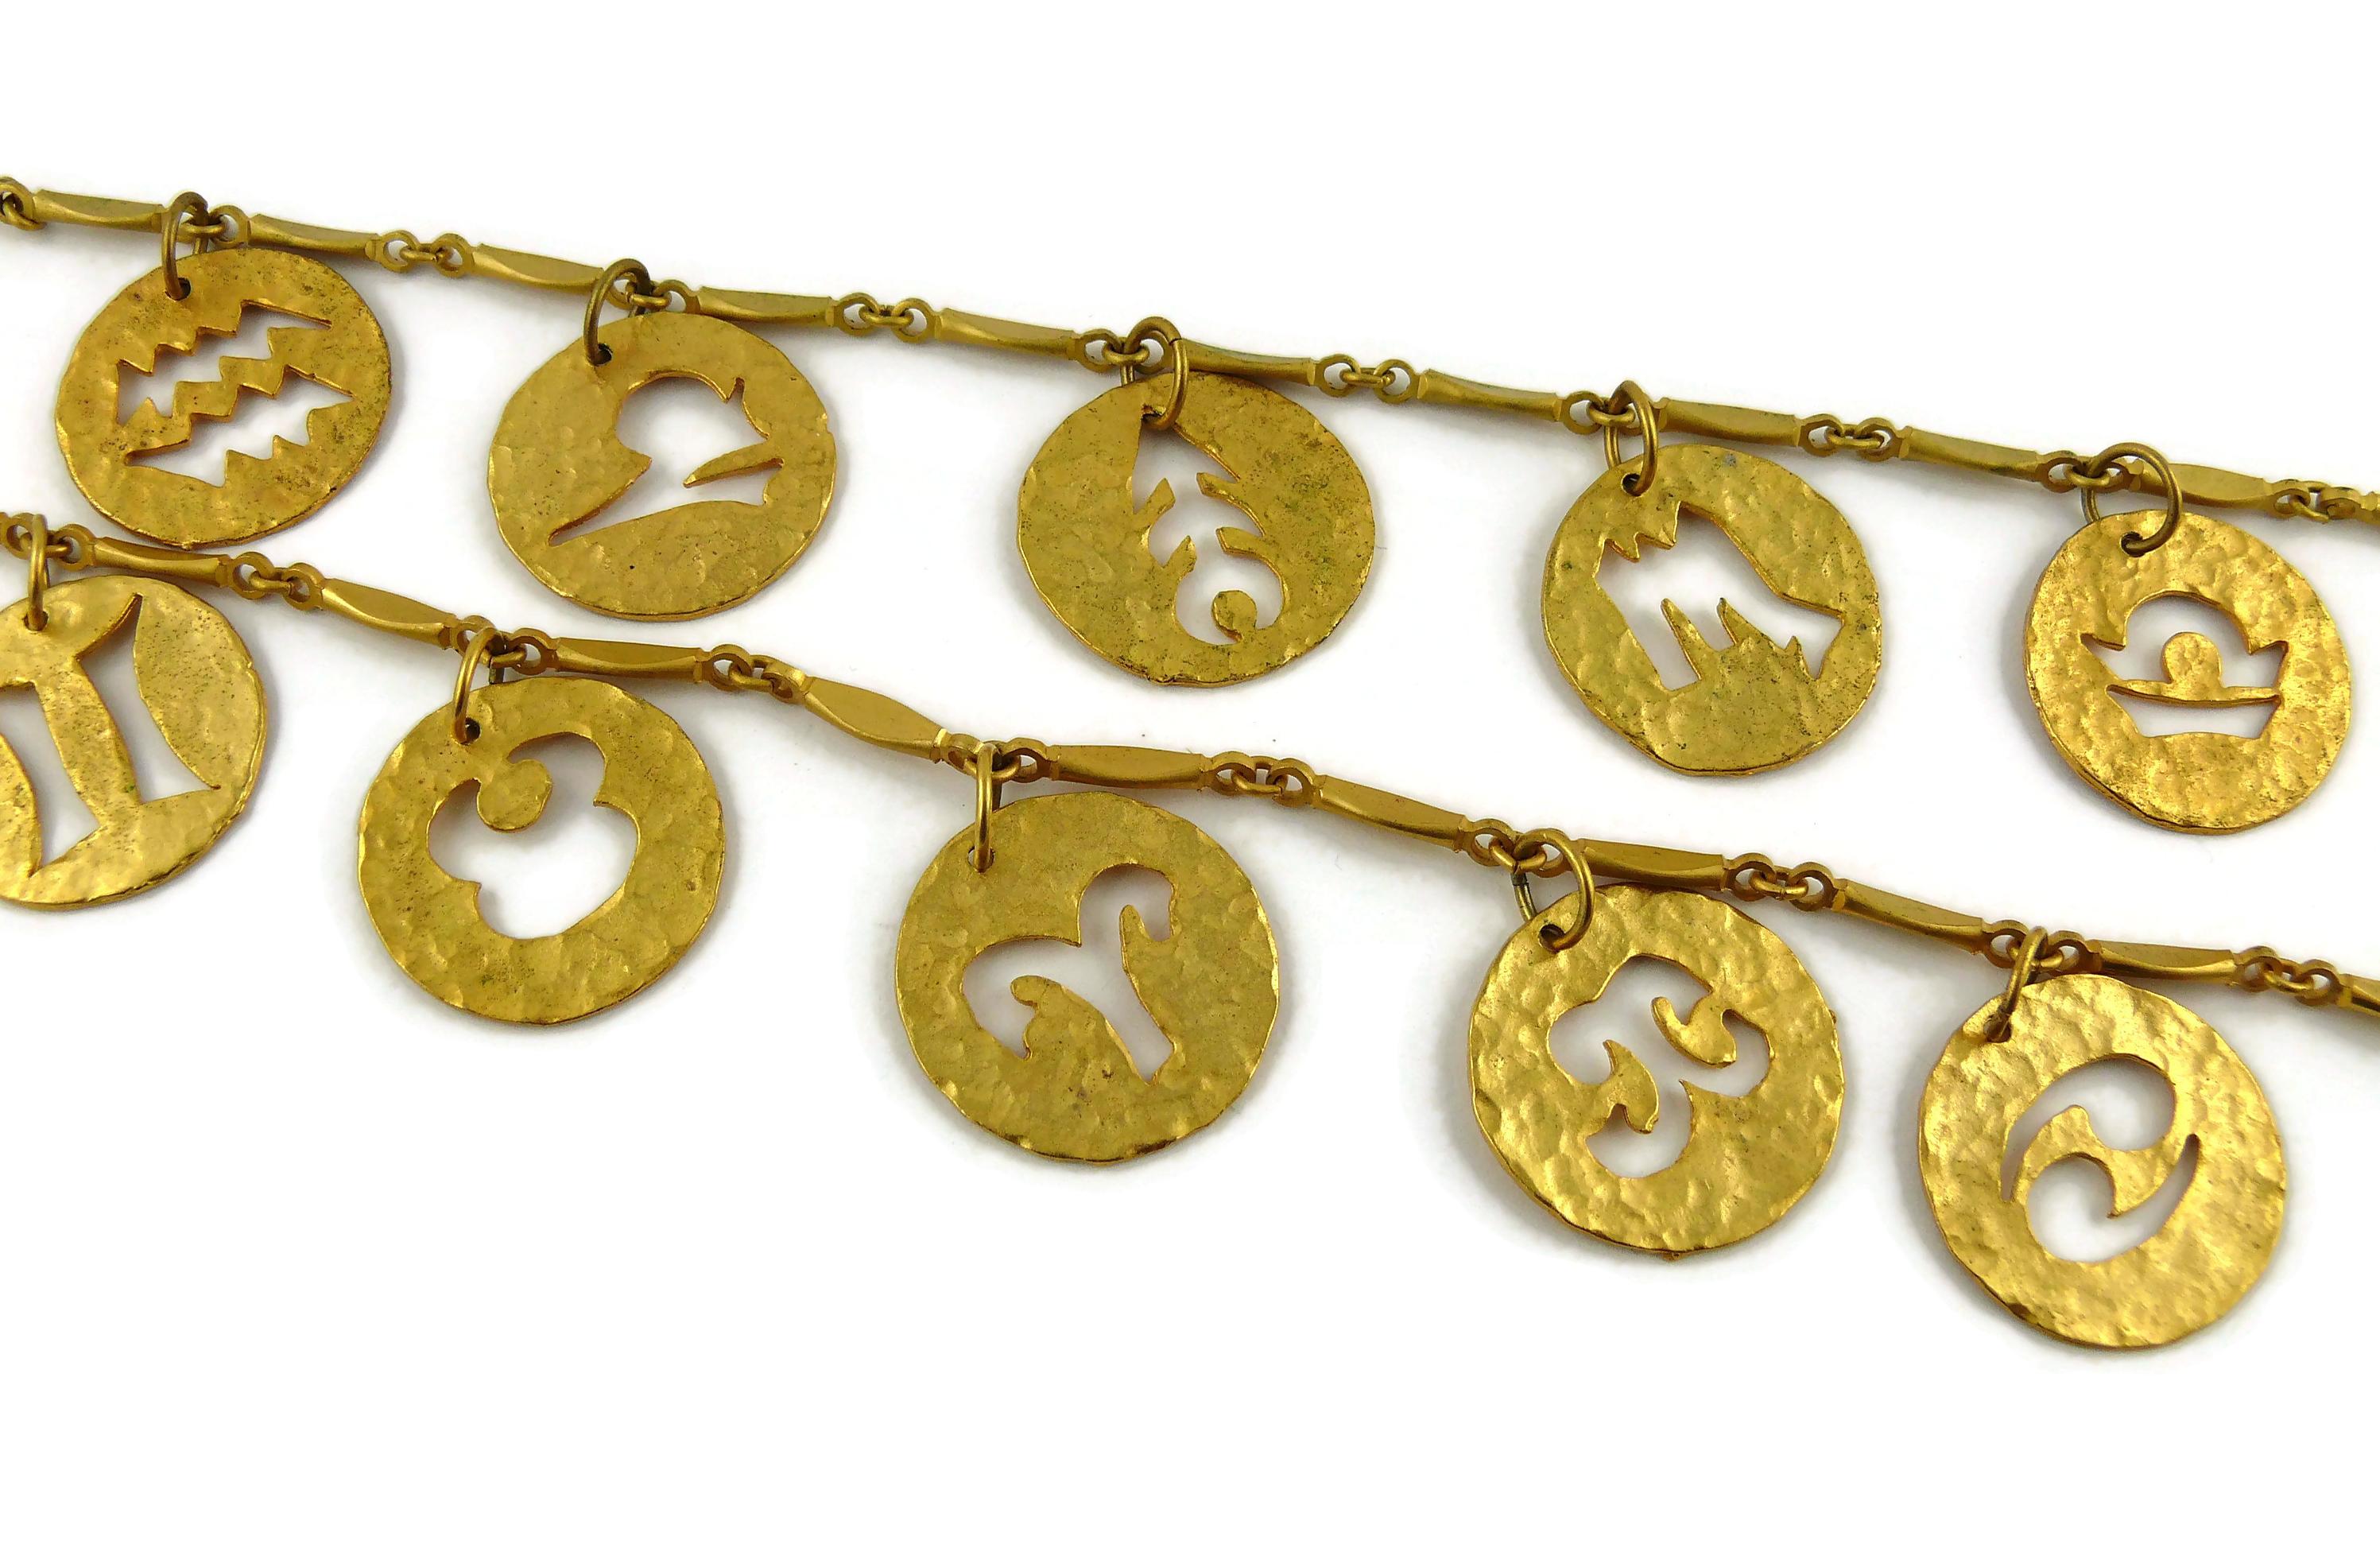 vintage zodiac necklace